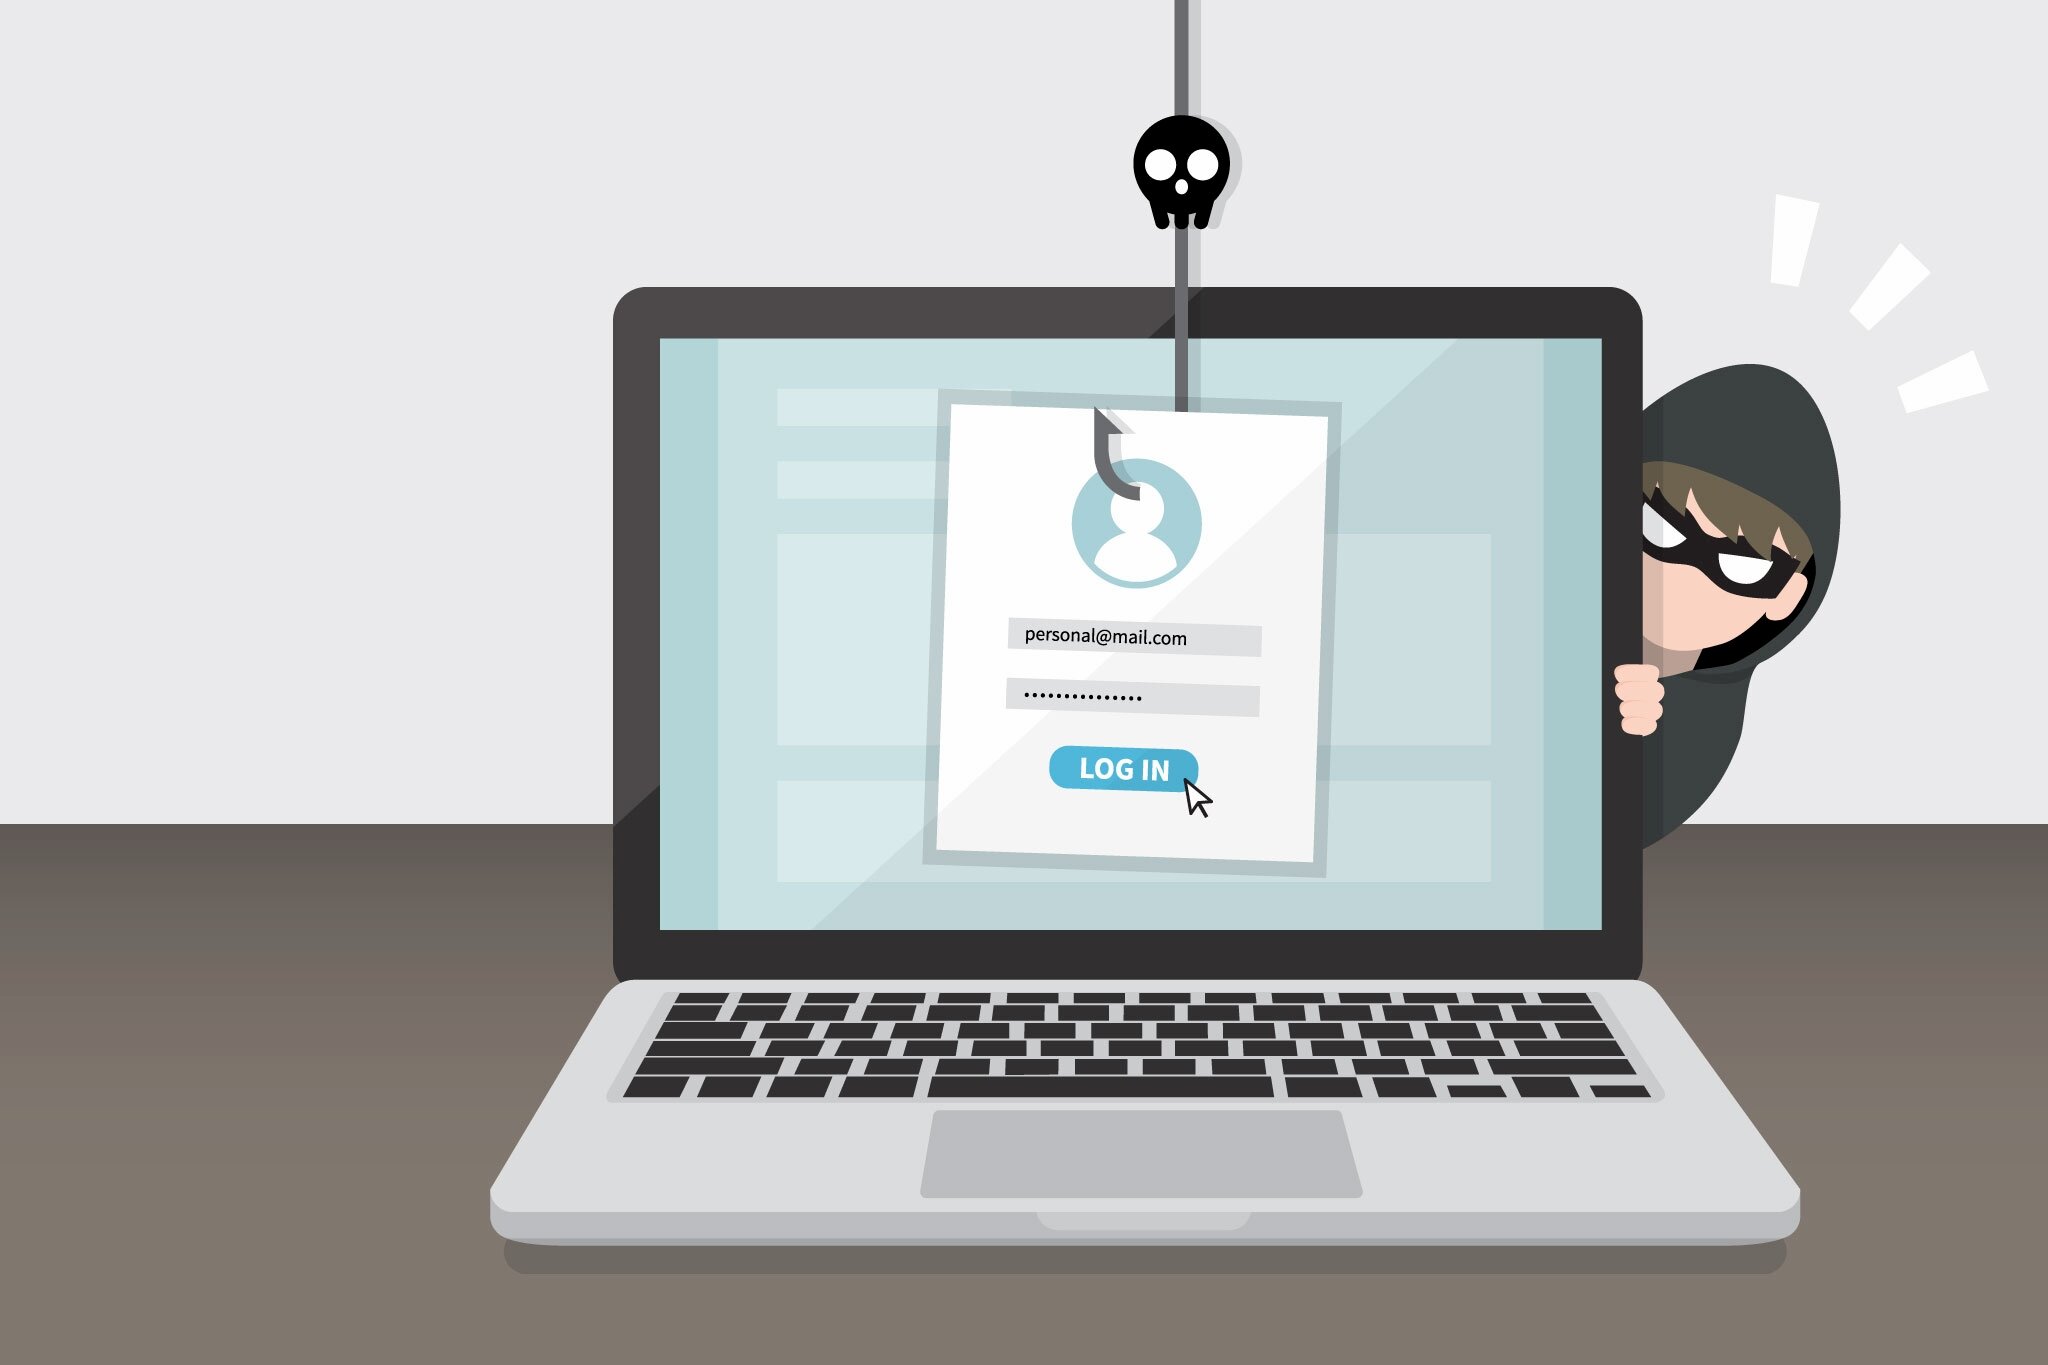 Chrome nimmt eine wichtige Änderung vor, um Sie vor Phishing zu schützen